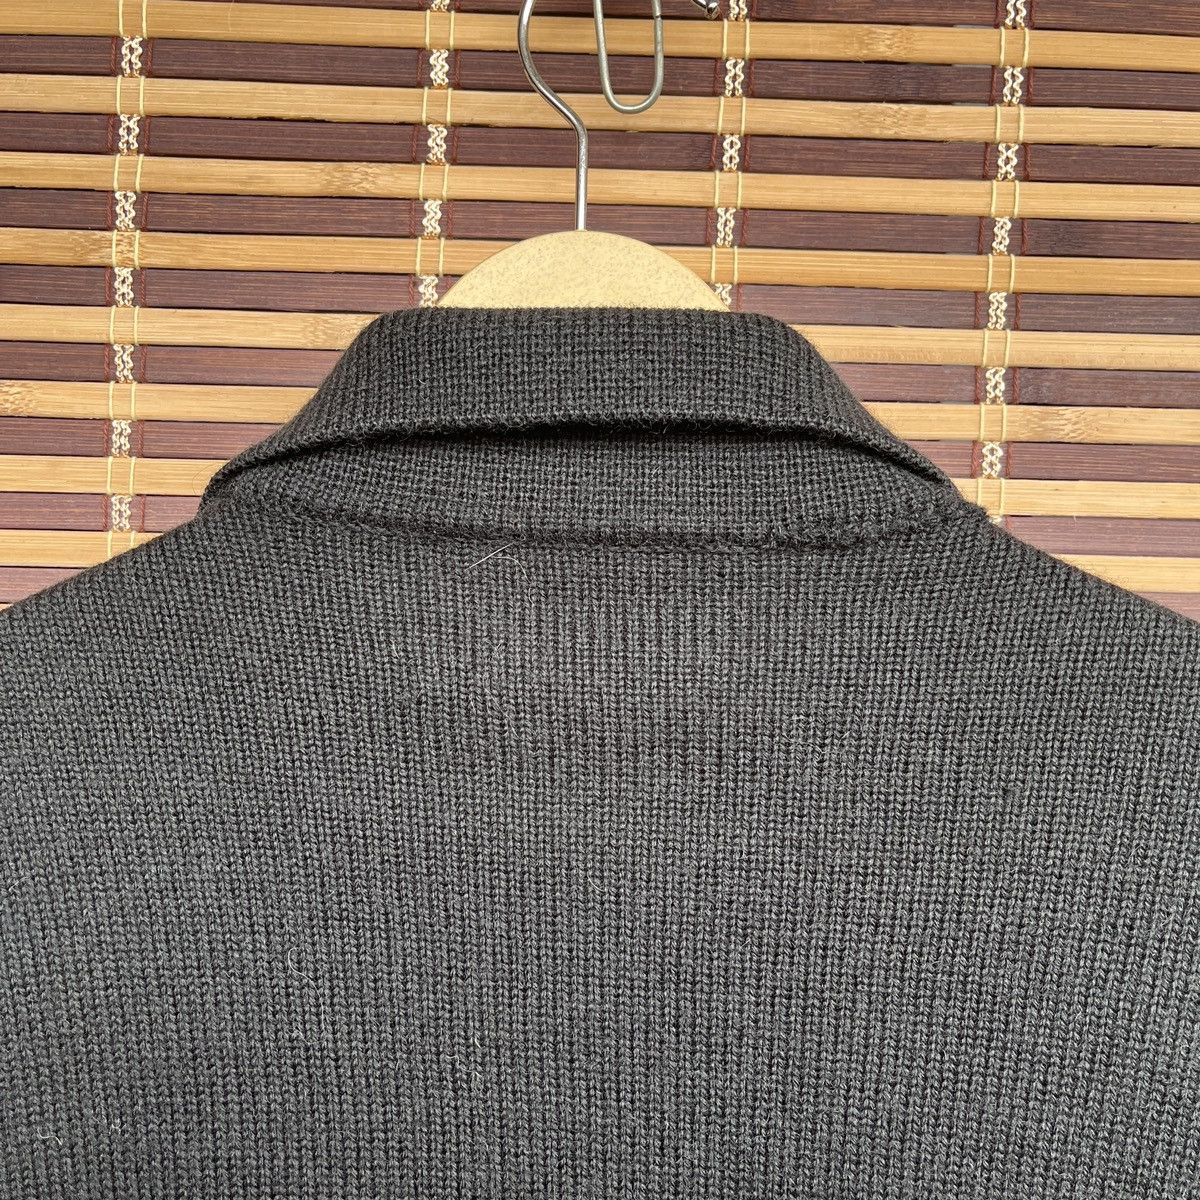 Vintage - Knitwear Leather Sweater Jacket Japan - 17